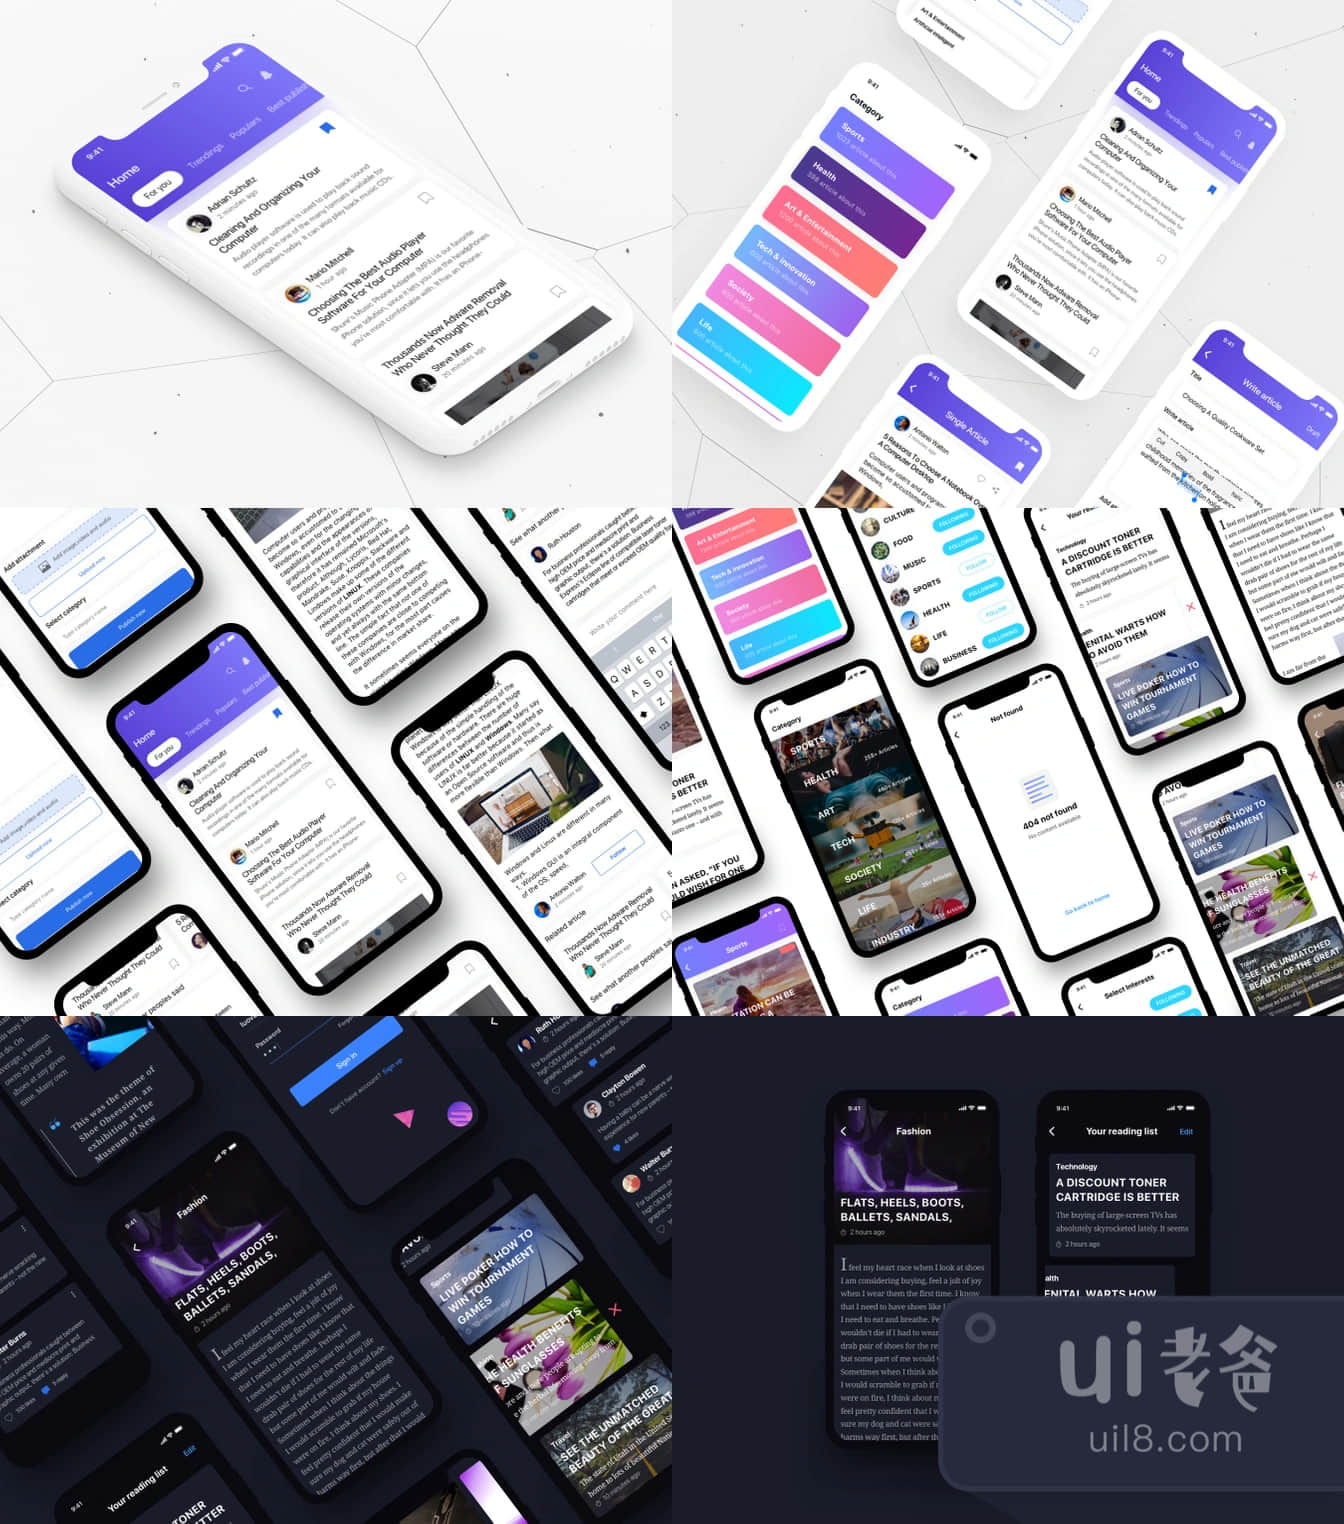 新闻iOS UI Kit (News iOS UI Kit)插图1